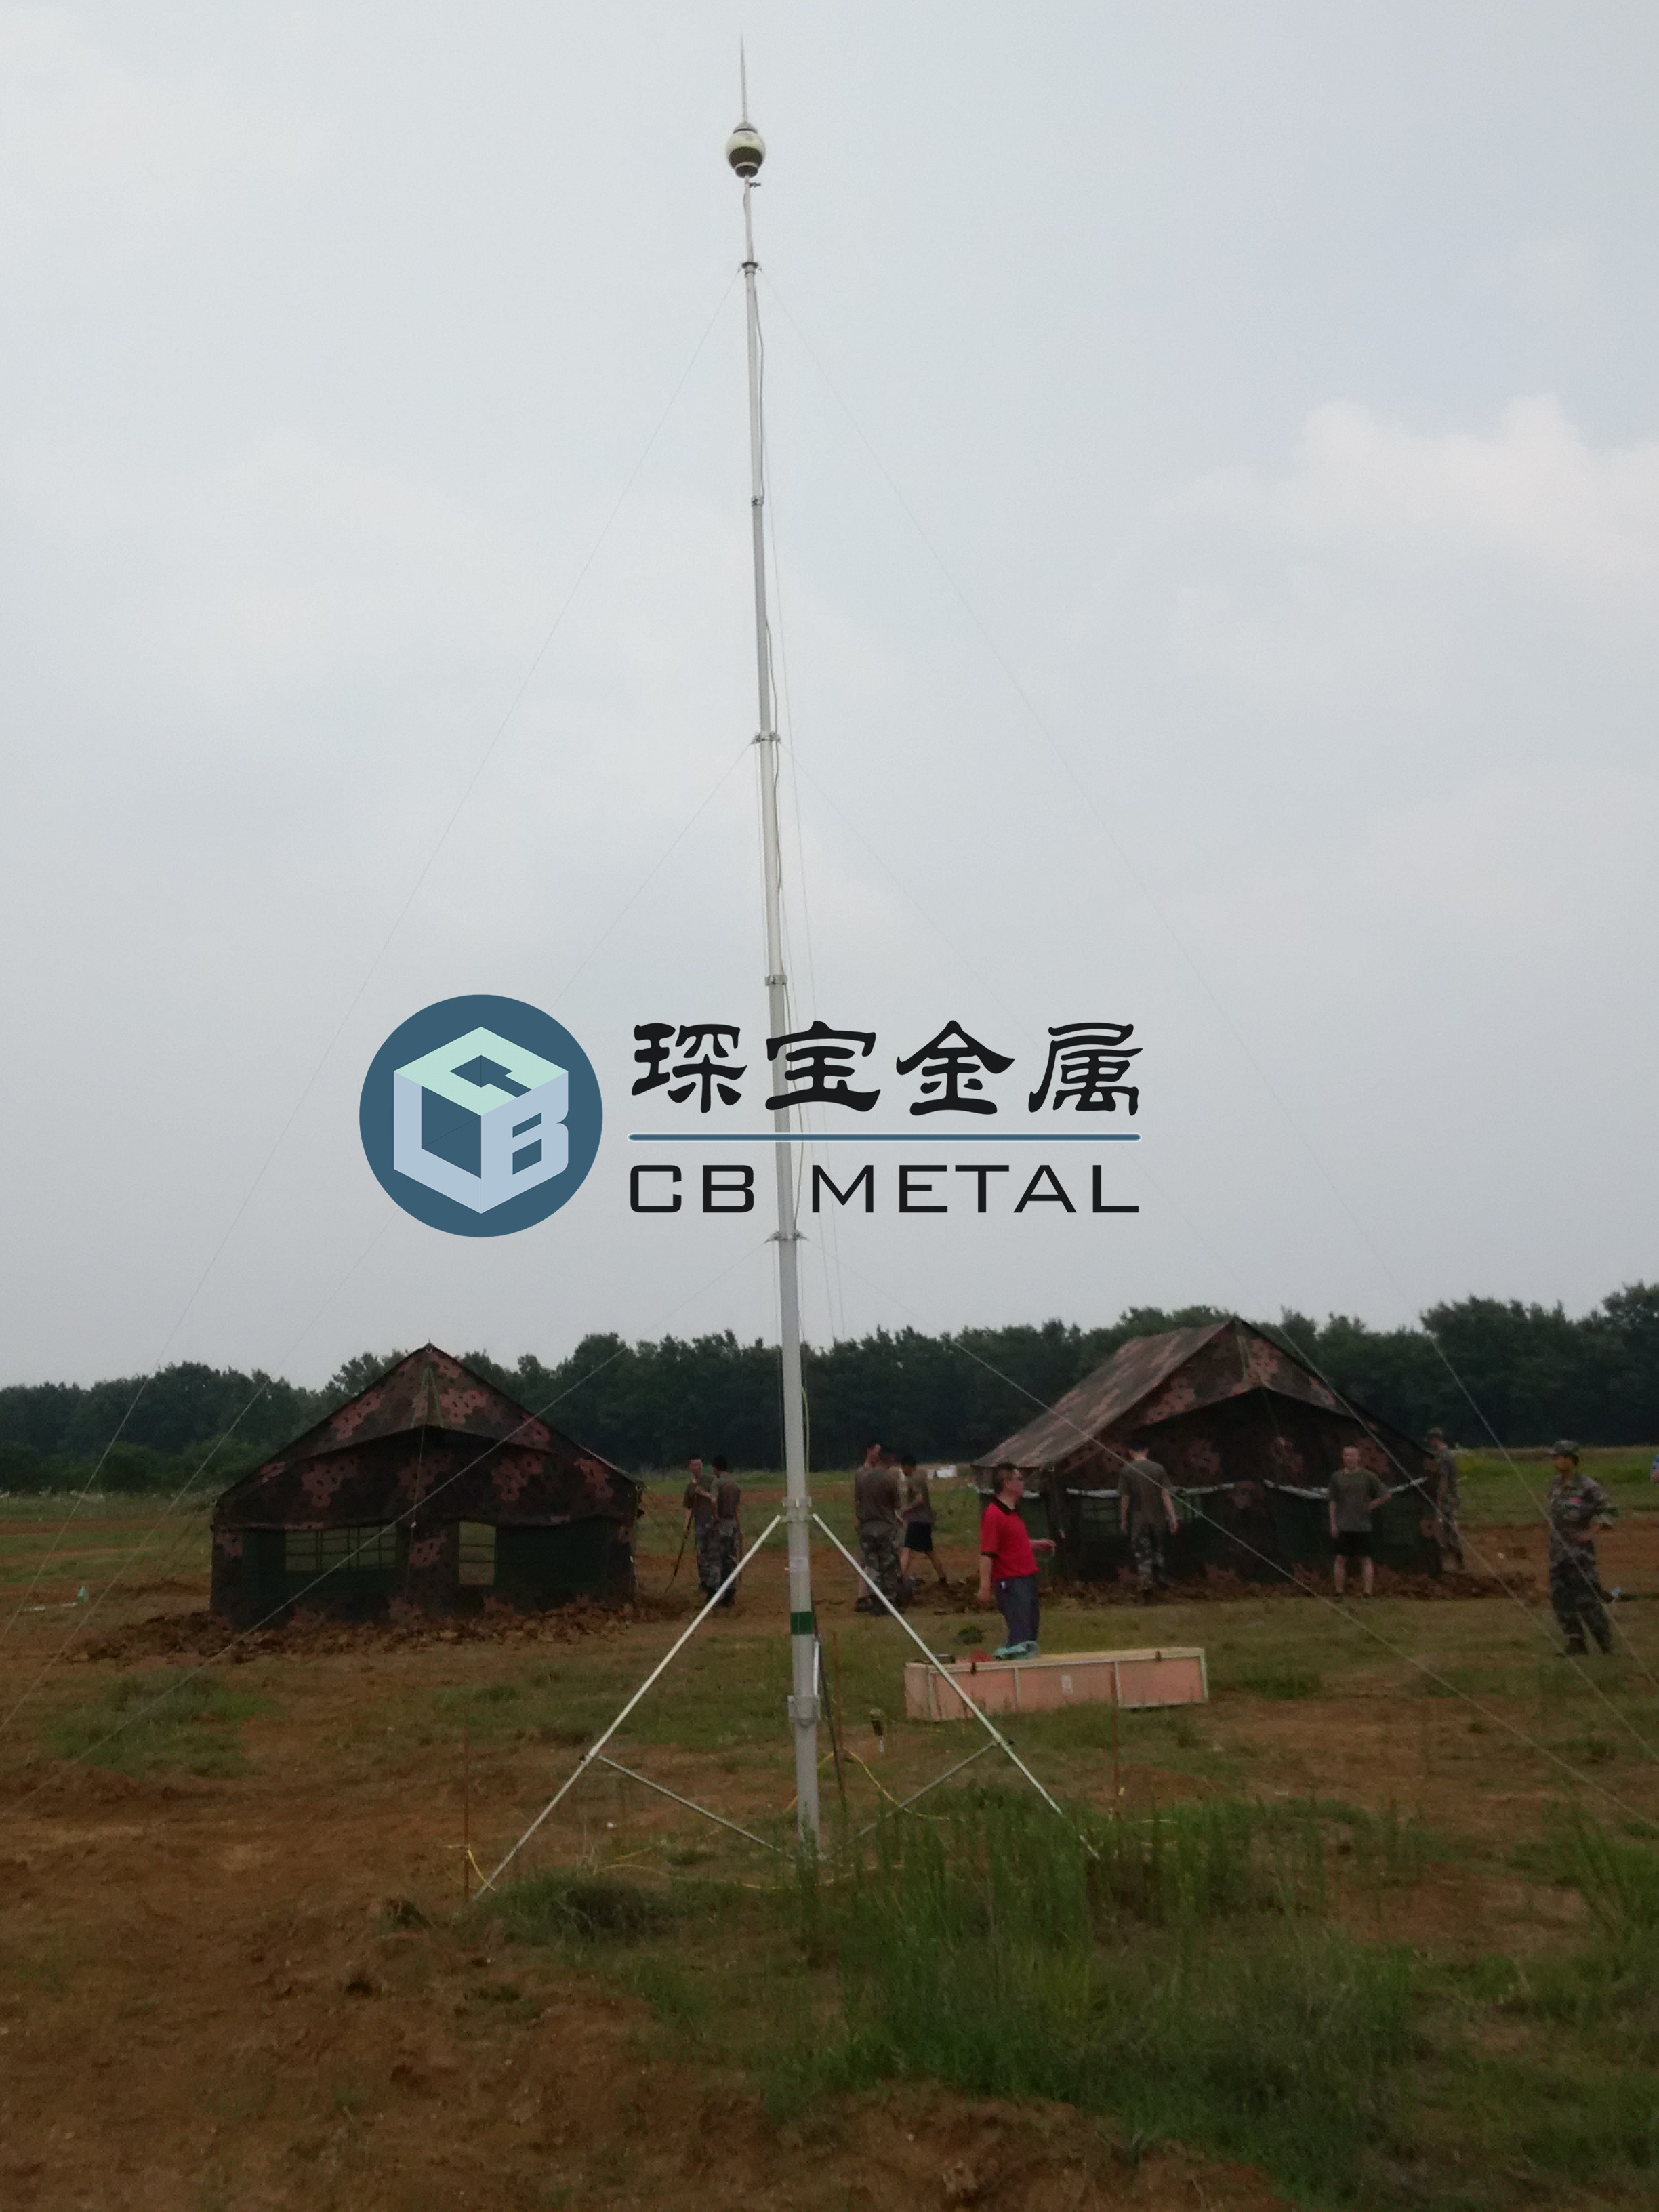 琛宝SJ-018升降式避雷针自锁式升降杆  厂家直销 价格实惠图片